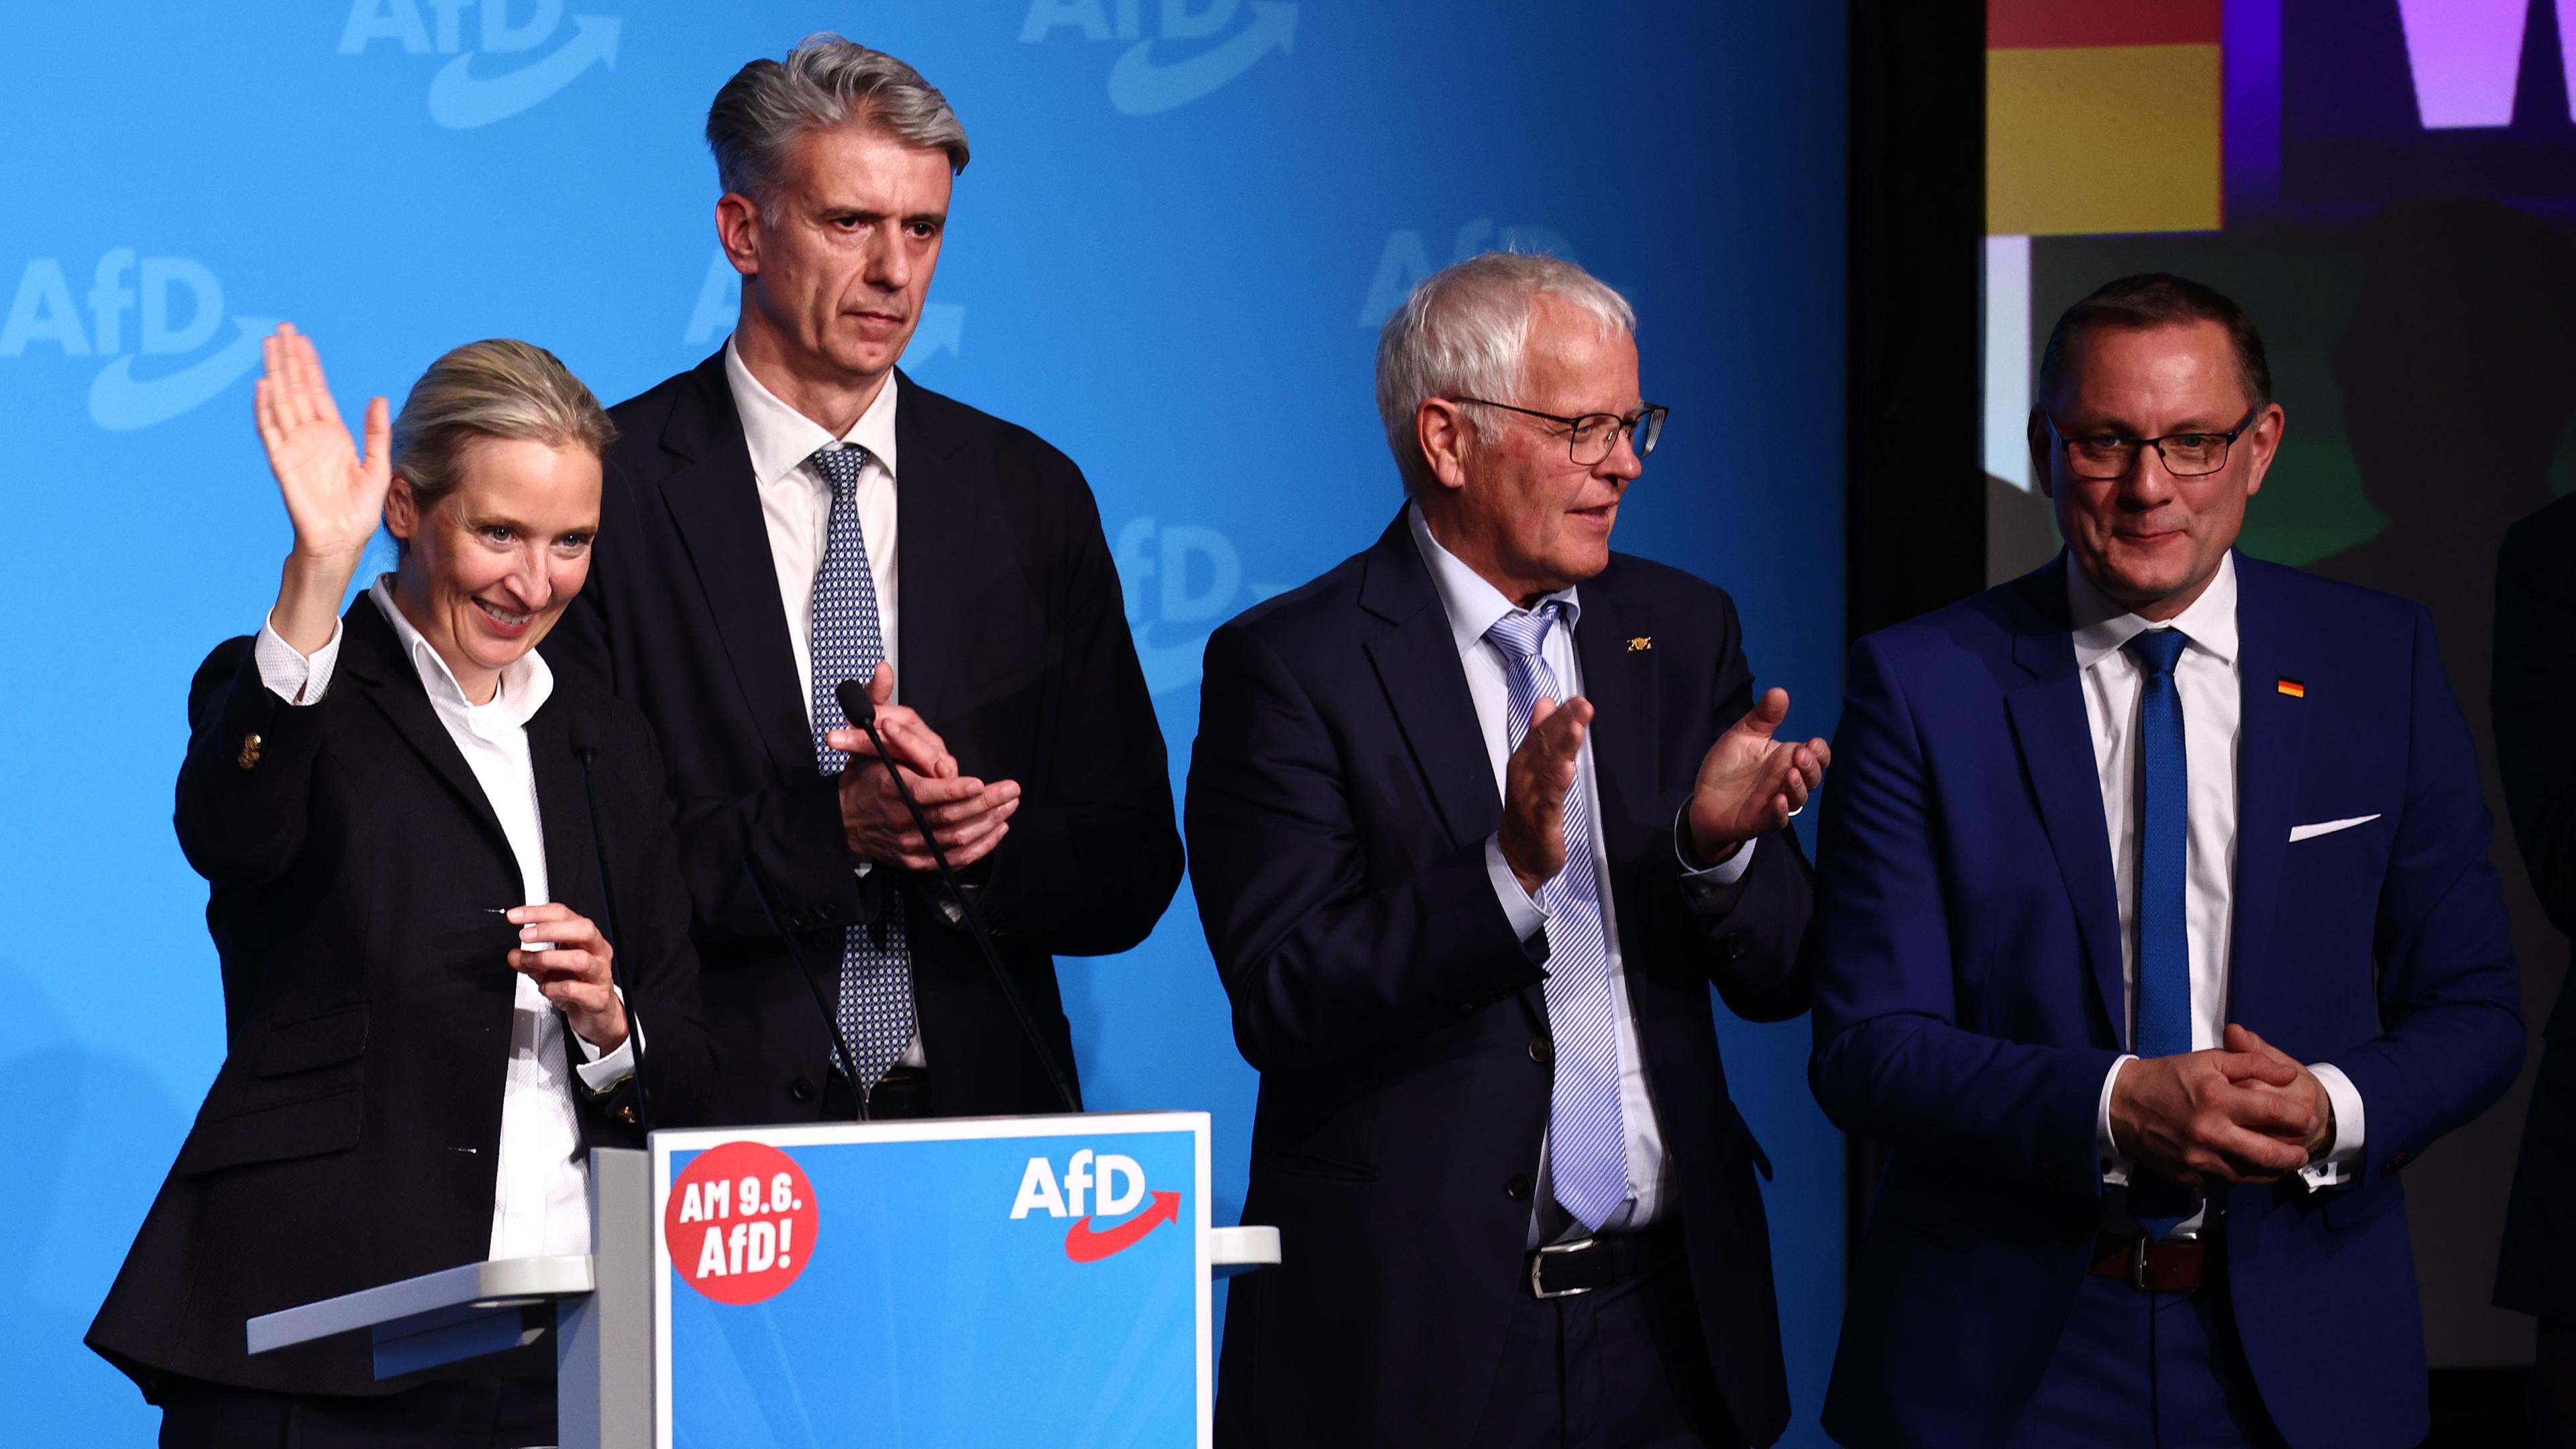 AfD Partei- und Fraktionsvorsitzende Alice Weidel, AfD Kandidat Dr. Marc Jongen, AfD-Mitglied Emil Saenze und Partei- und Fraktions-Co-Vorsitzender Tino Chrupalla winken zum Abschied nach dem Wahlkampf-Auftakt zur Europawahl.